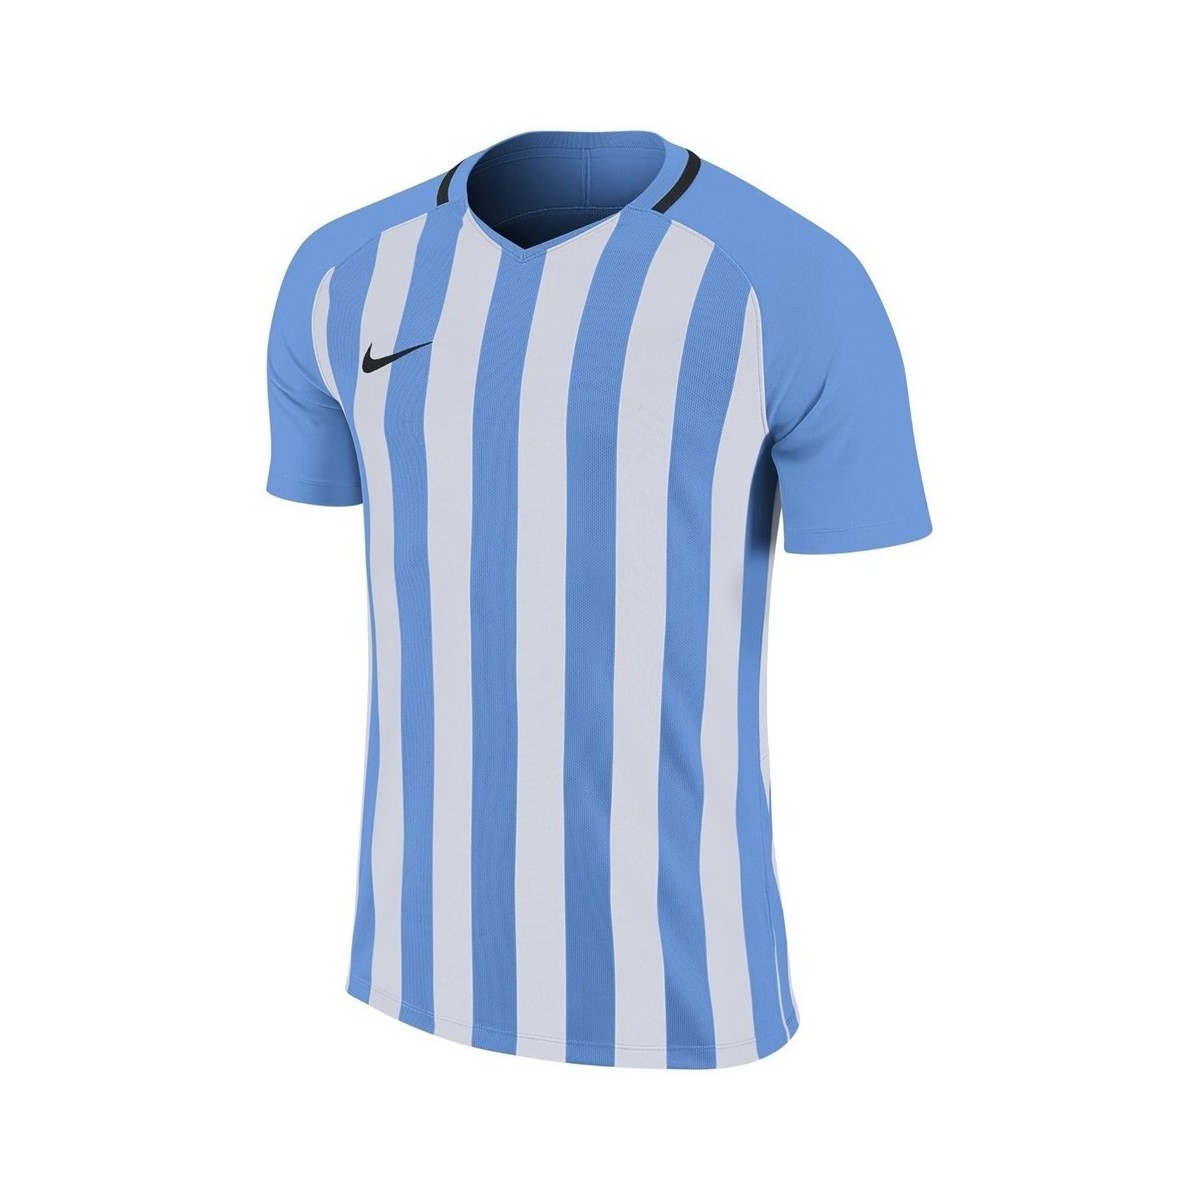 Textil Muži Trička s krátkým rukávem Nike Striped Division Jersey Iii Bílé, Modré